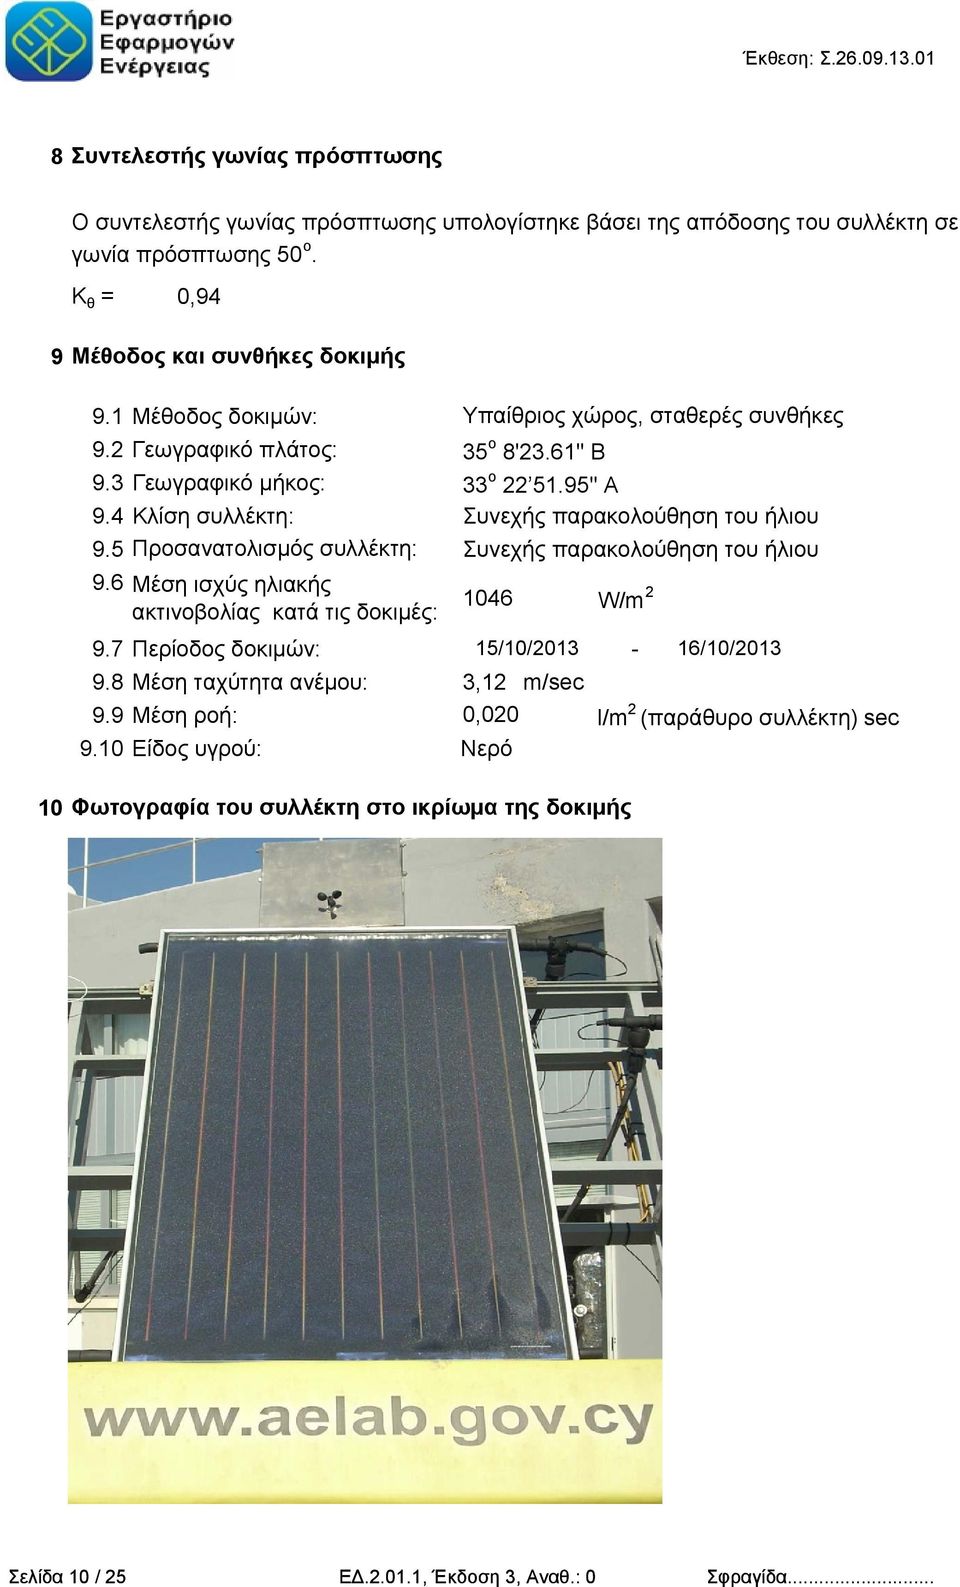 4 Κλίση συλλέκτη: Συνεχής παρακολούθηση του ήλιου 9.5 Προσανατολισμός συλλέκτη: Συνεχής παρακολούθηση του ήλιου 9.6 Μέση ισχύς ηλιακής ακτινοβολίας κατά τις δοκιμές: 9.